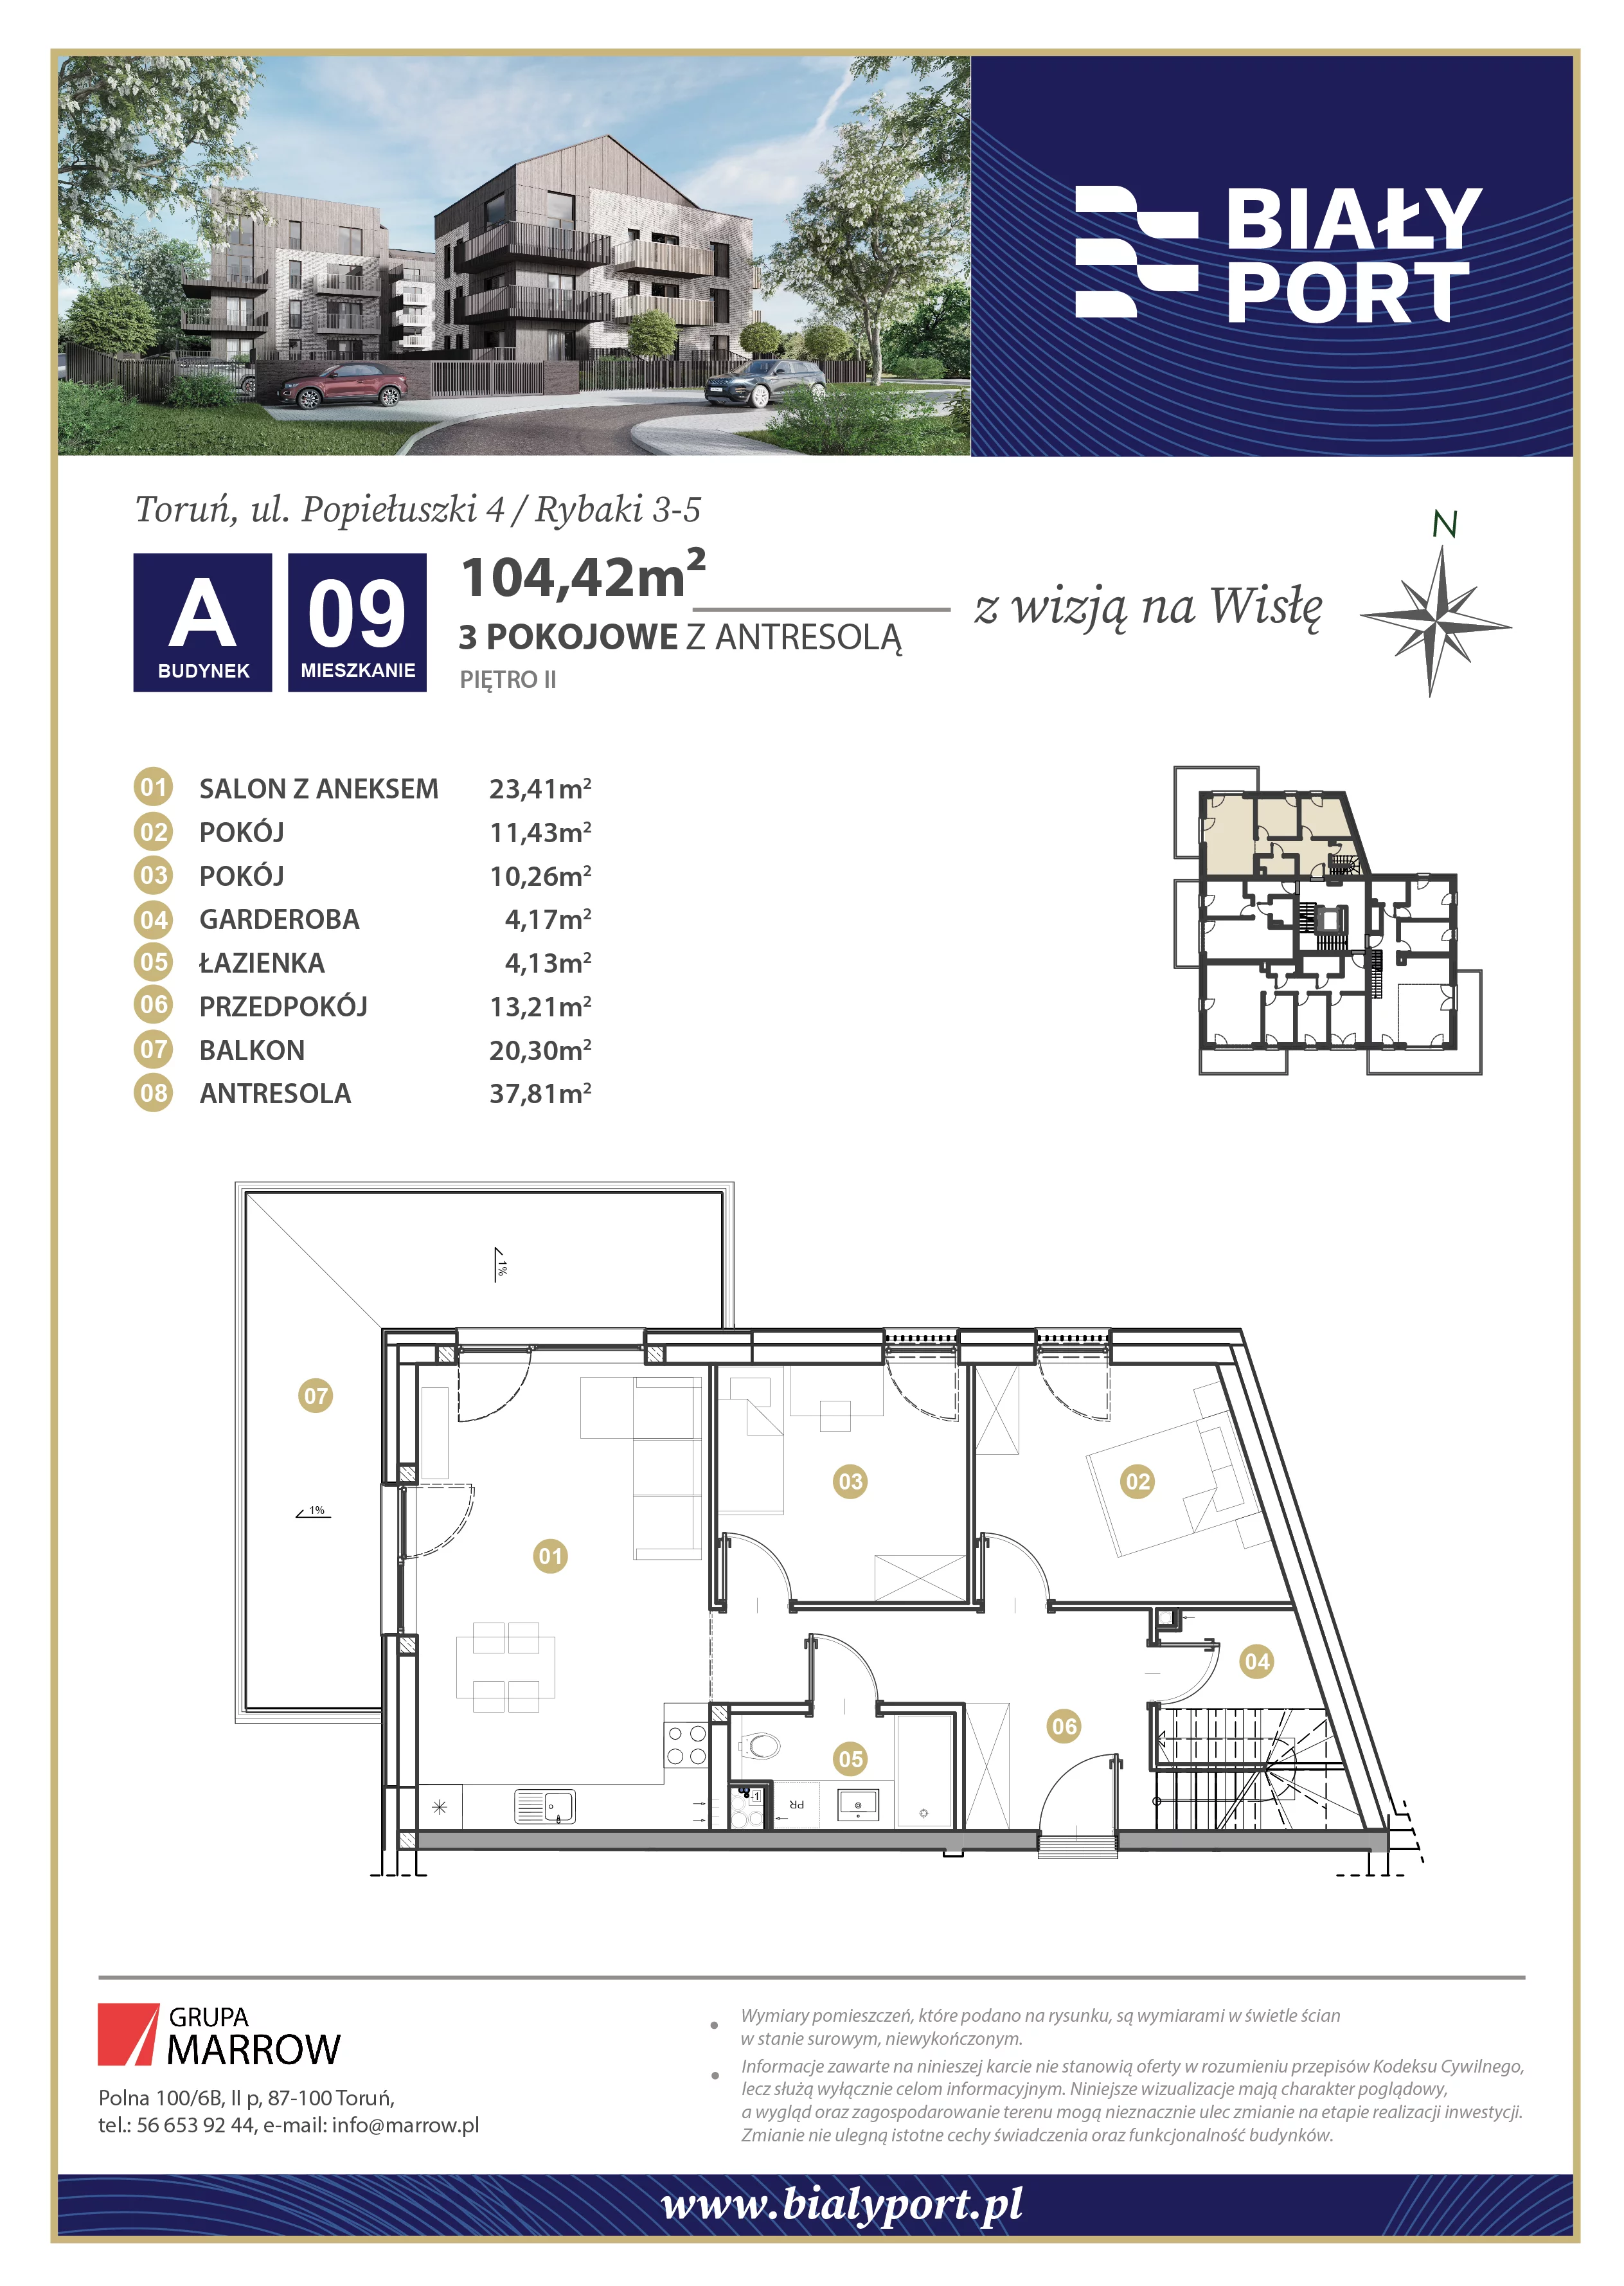 Mieszkanie 104,42 m², piętro 2, oferta nr 9, Biały Port, Toruń, Rybaki, ul. Popiełuszki 4